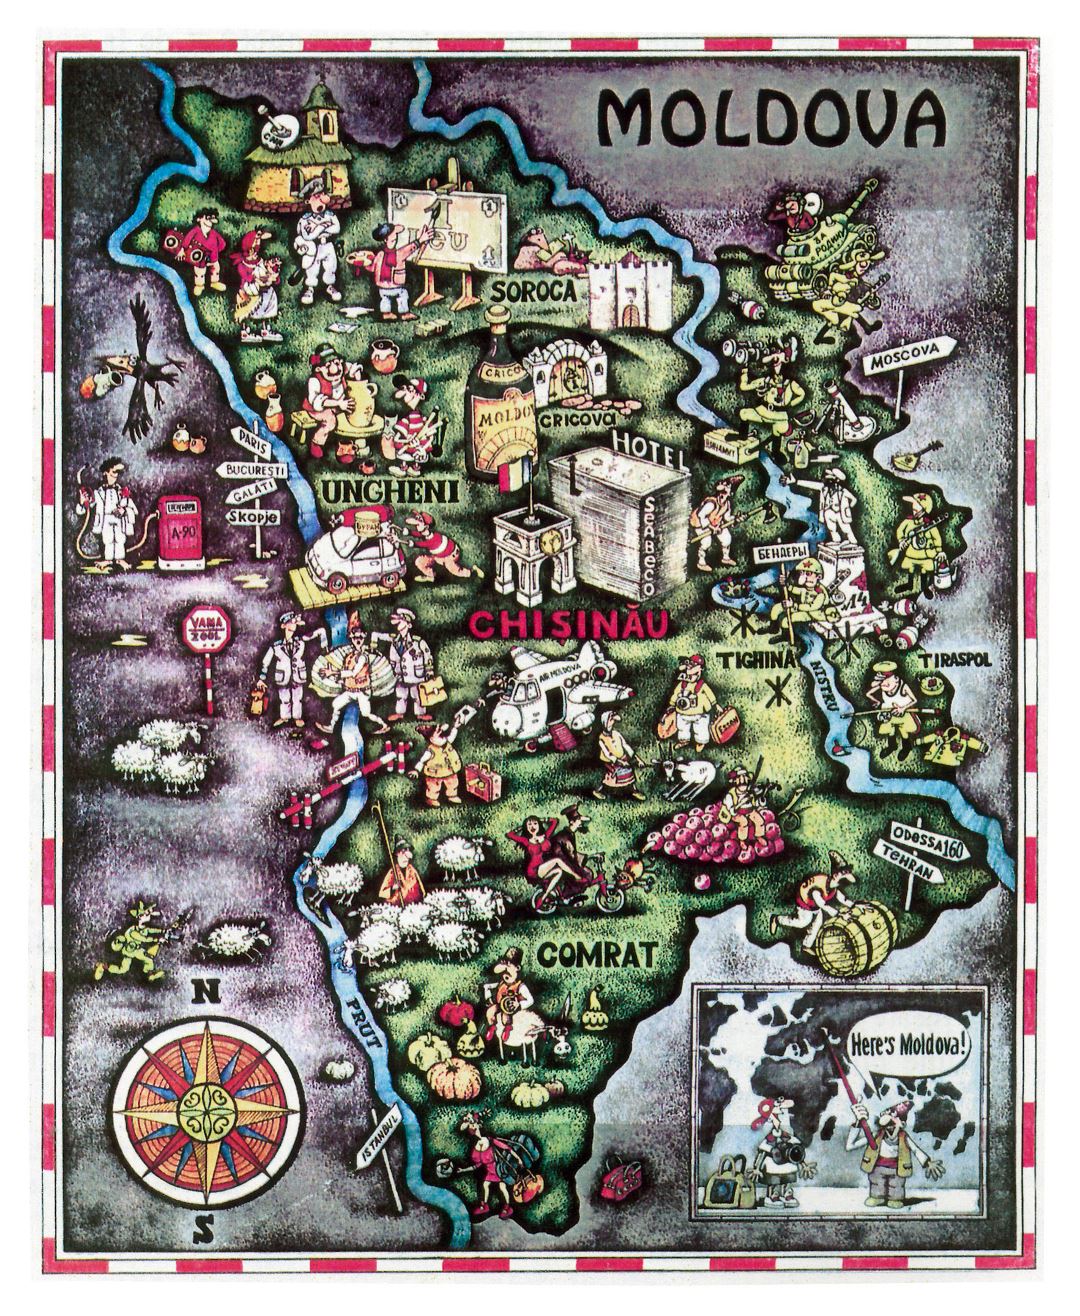 Grande turismo ilustra mapa de Moldova